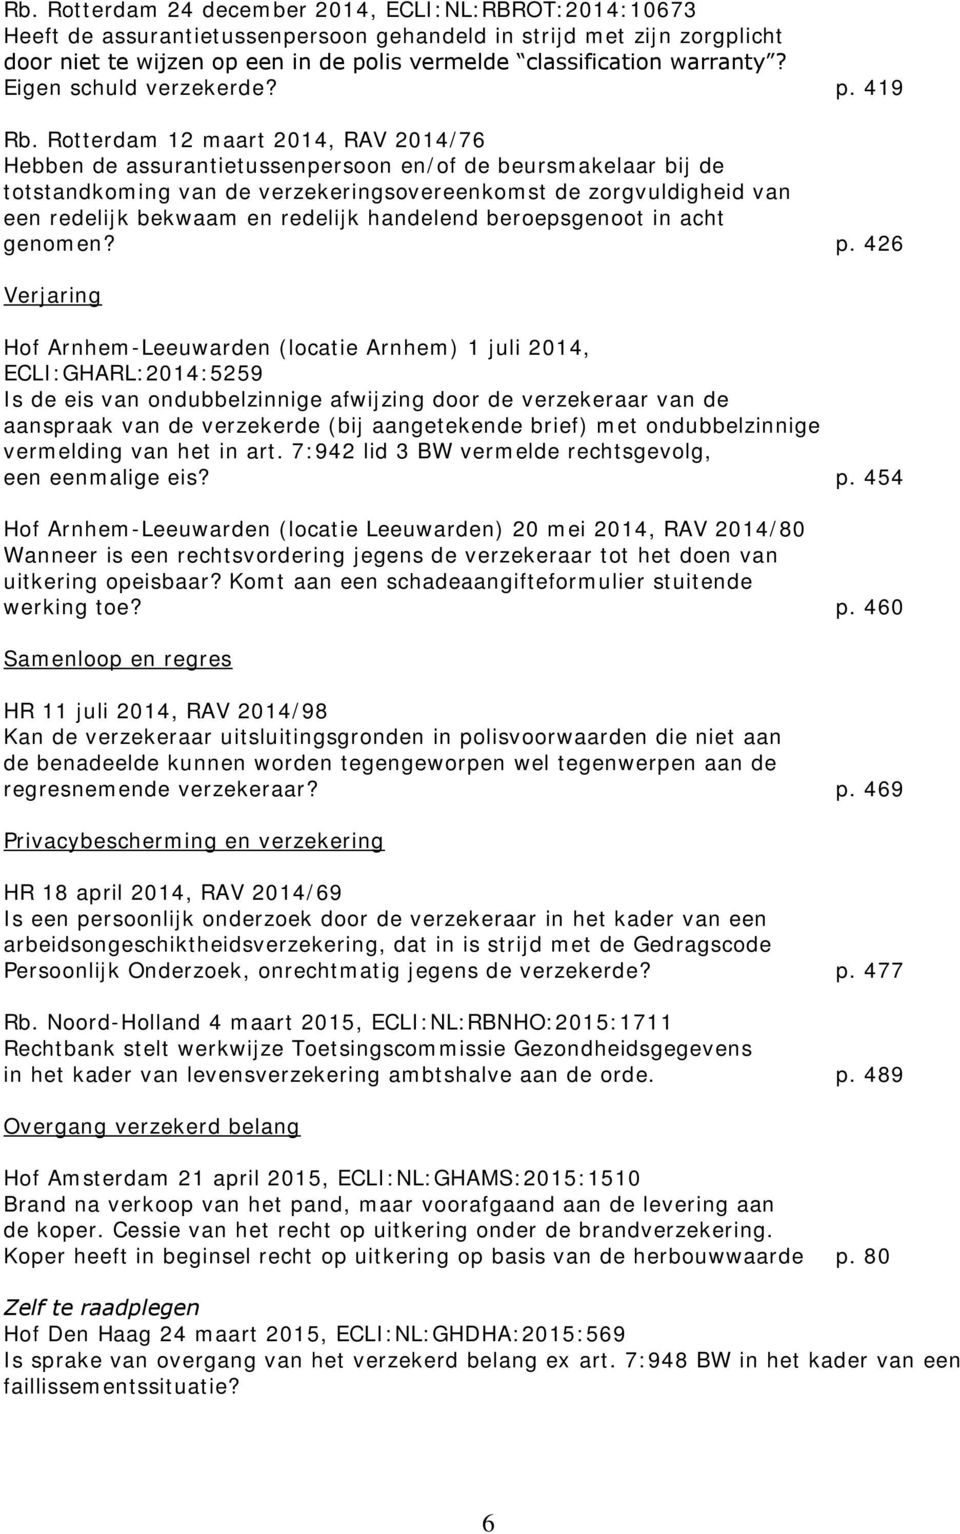 Rotterdam 12 maart 2014, RAV 2014/76 Hebben de assurantietussenpersoon en/of de beursmakelaar bij de totstandkoming van de verzekeringsovereenkomst de zorgvuldigheid van een redelijk bekwaam en